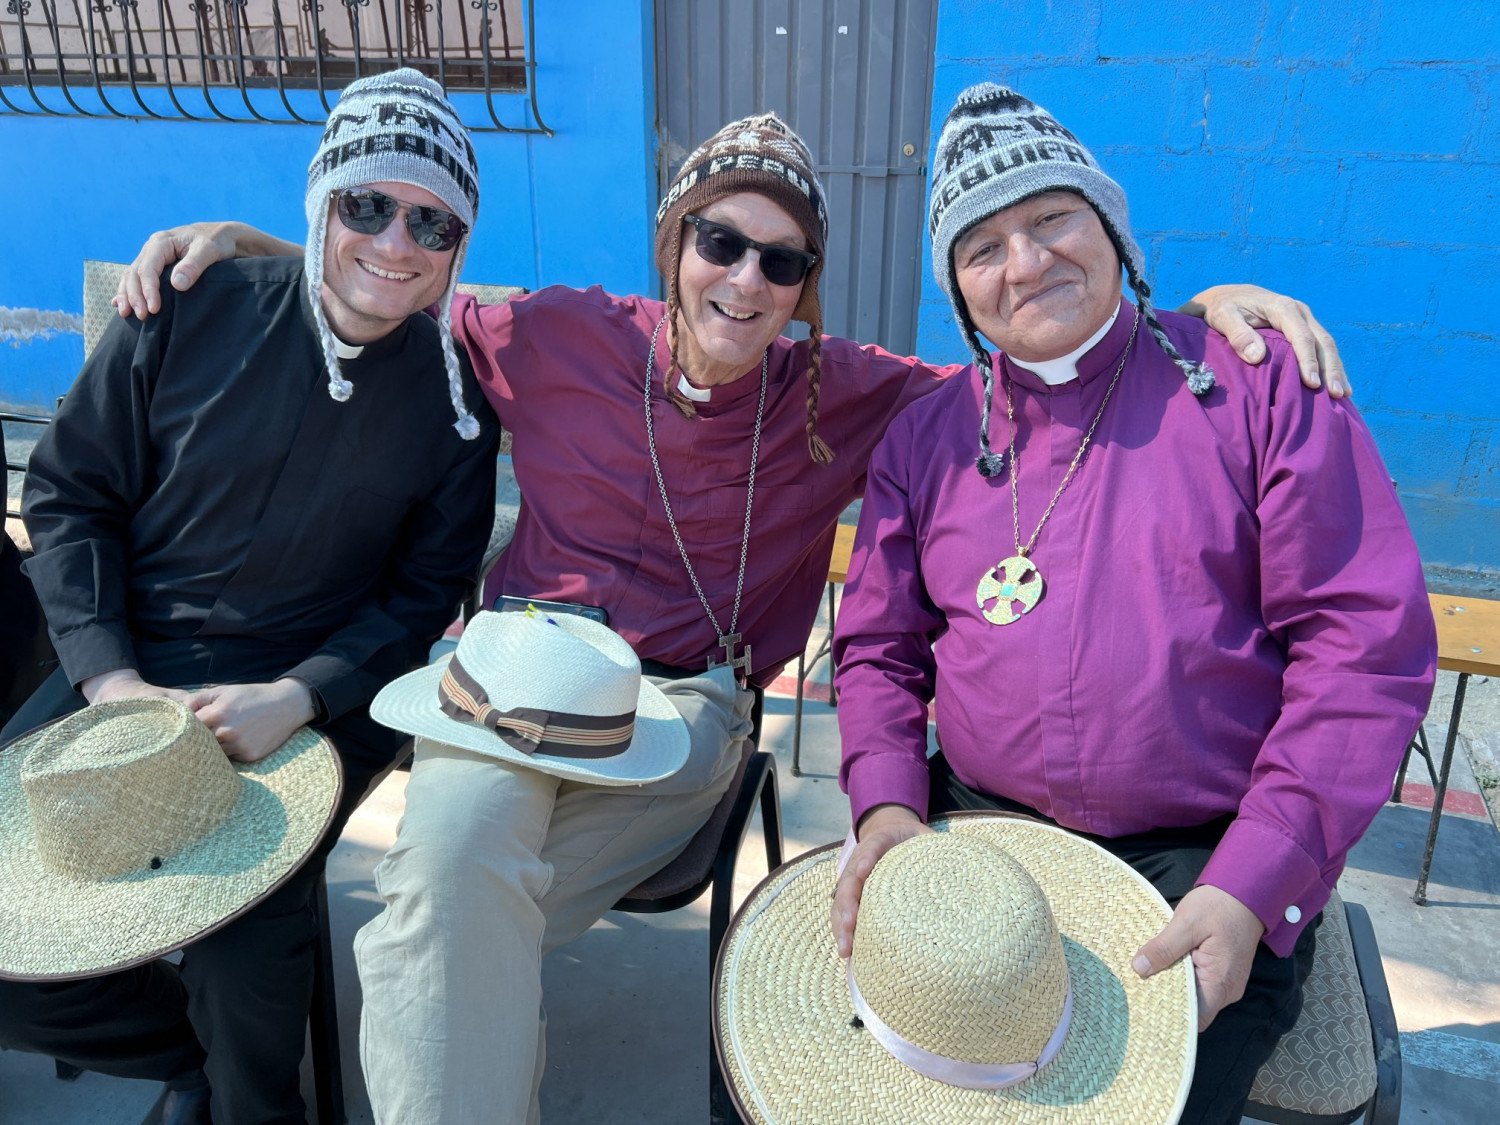 Phil Bradford, Bishop John and Bishop Jorge in Peruvian hats